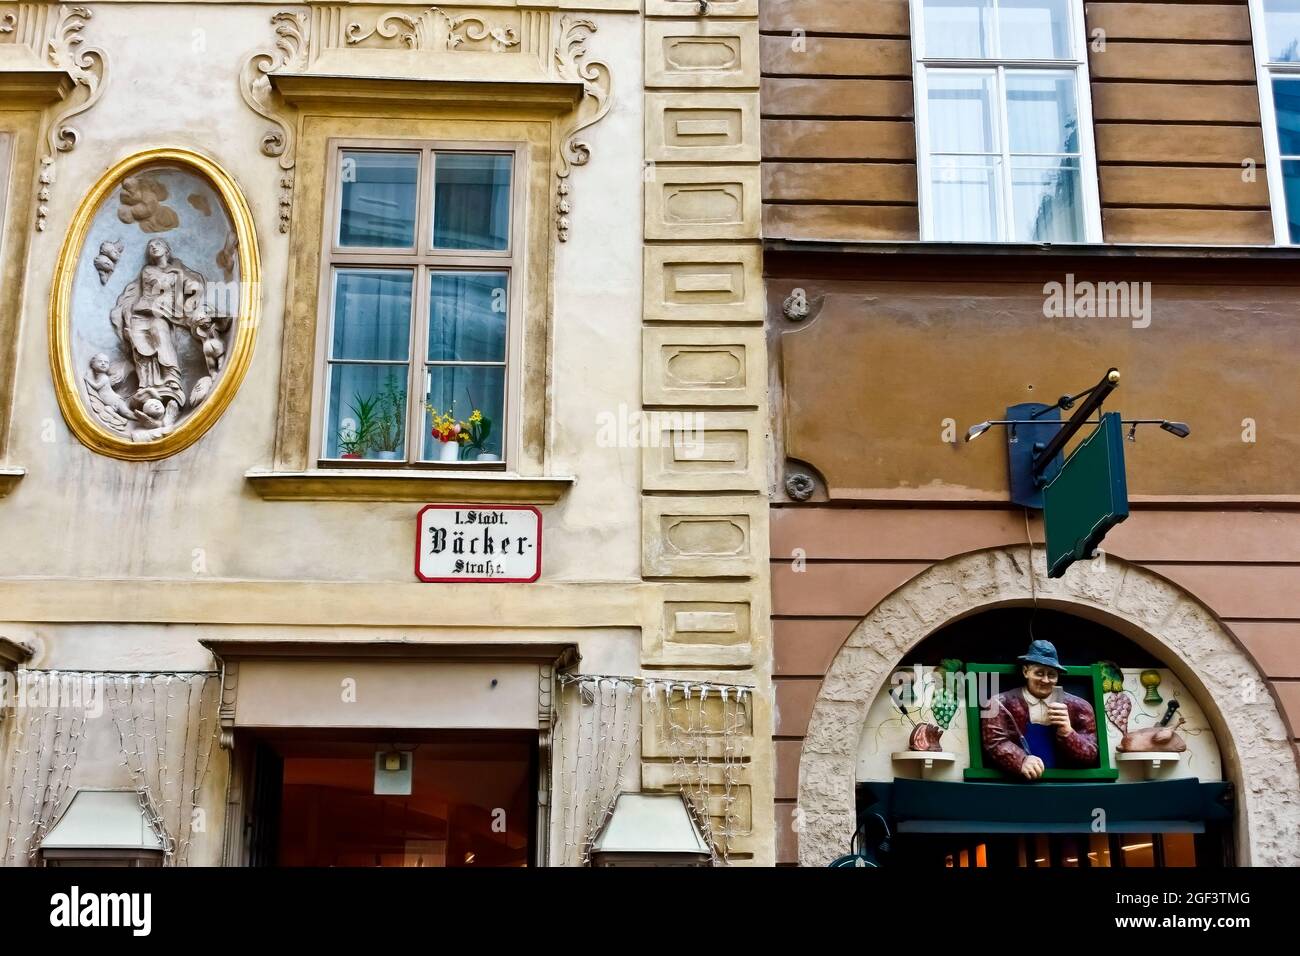 Ristorante viennese tradizionale. Il più famoso ristorante schnitzel di Vienna, Austria. Muro ceramica segno pubblicità sopra l'ingresso. Foto Stock